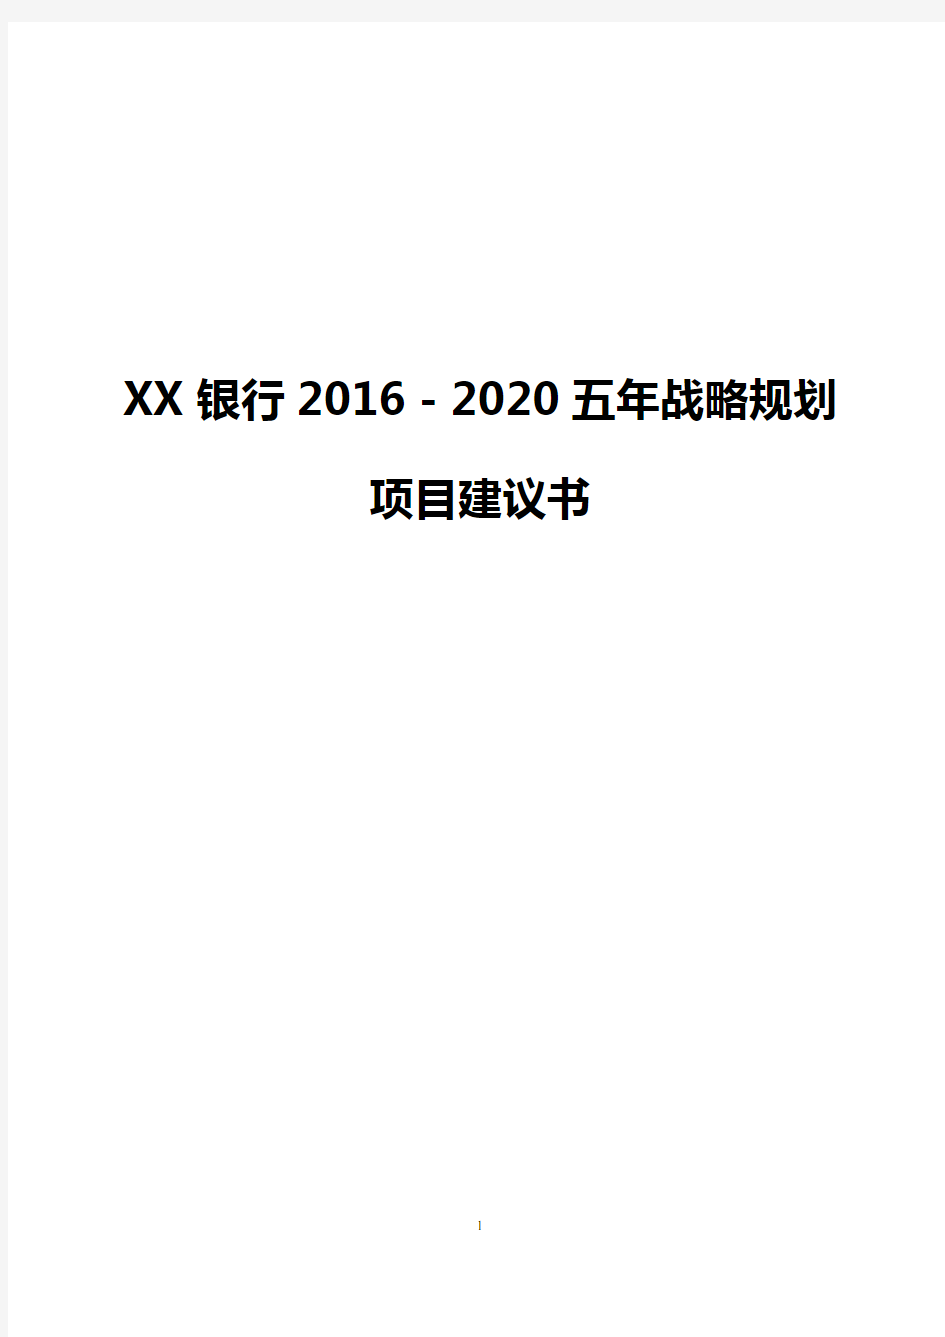 【完整版】XX银行2016-2020五年战略规划项目建议书